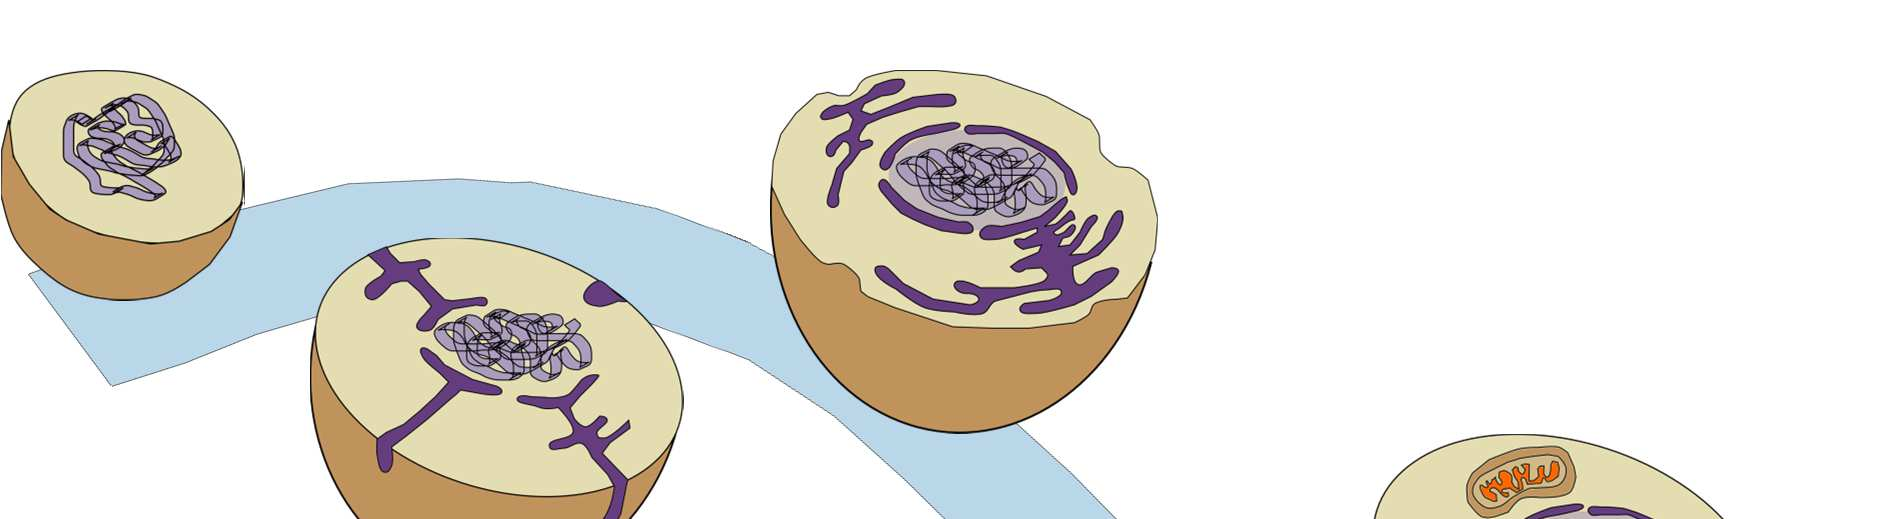 Warum haben Mitochondrien ein Genom?